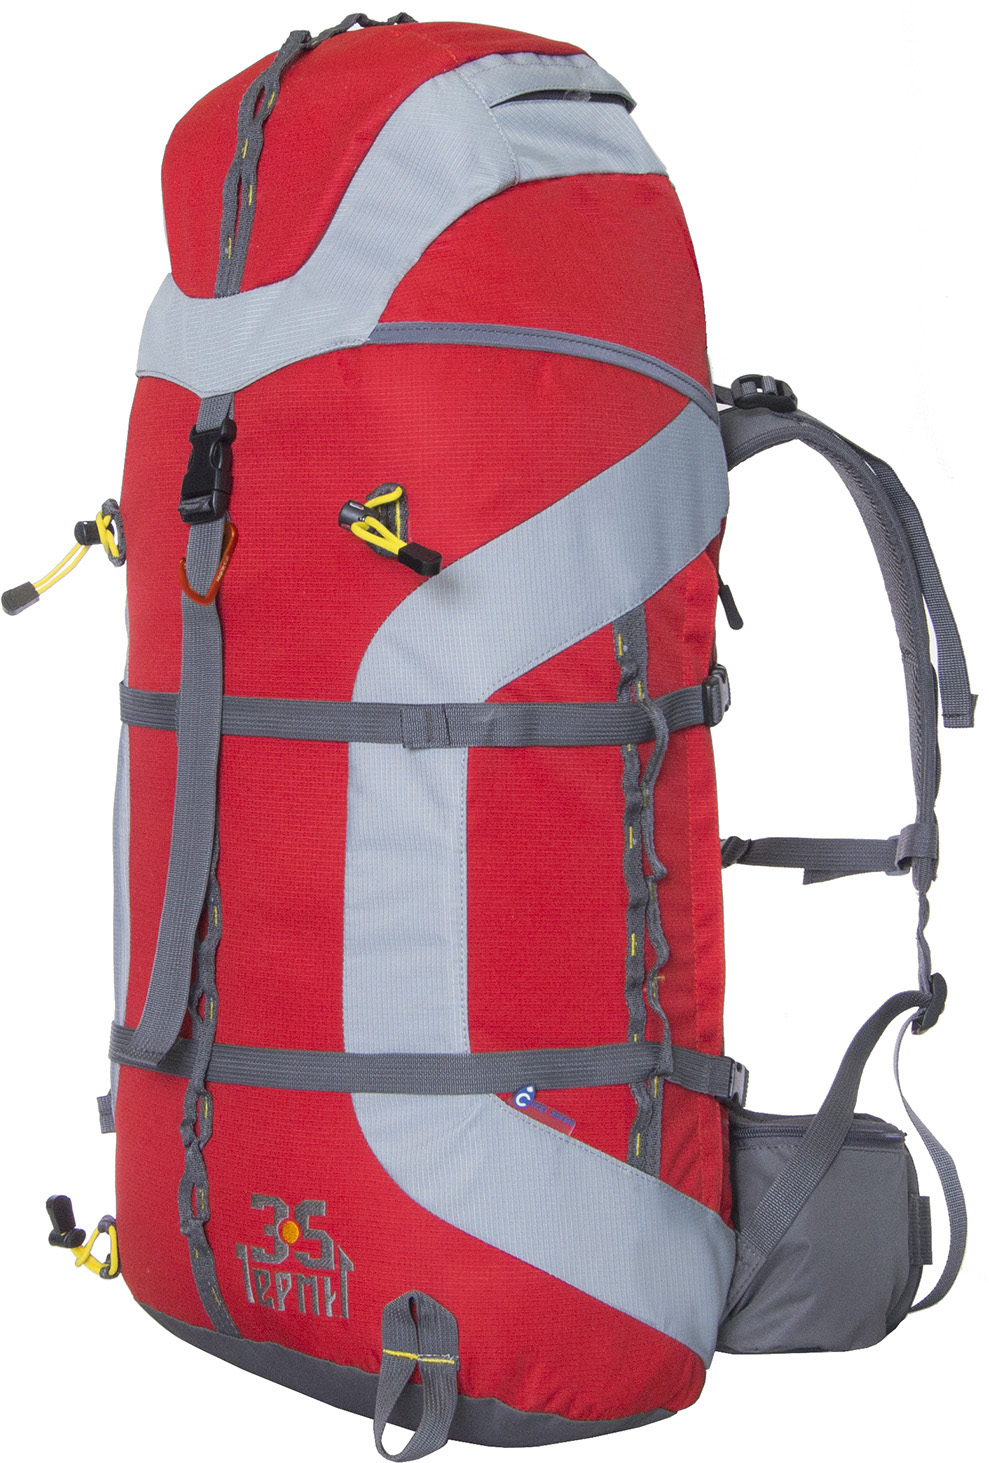 Рюкзак Снаряжение Termit 35 (Красный)